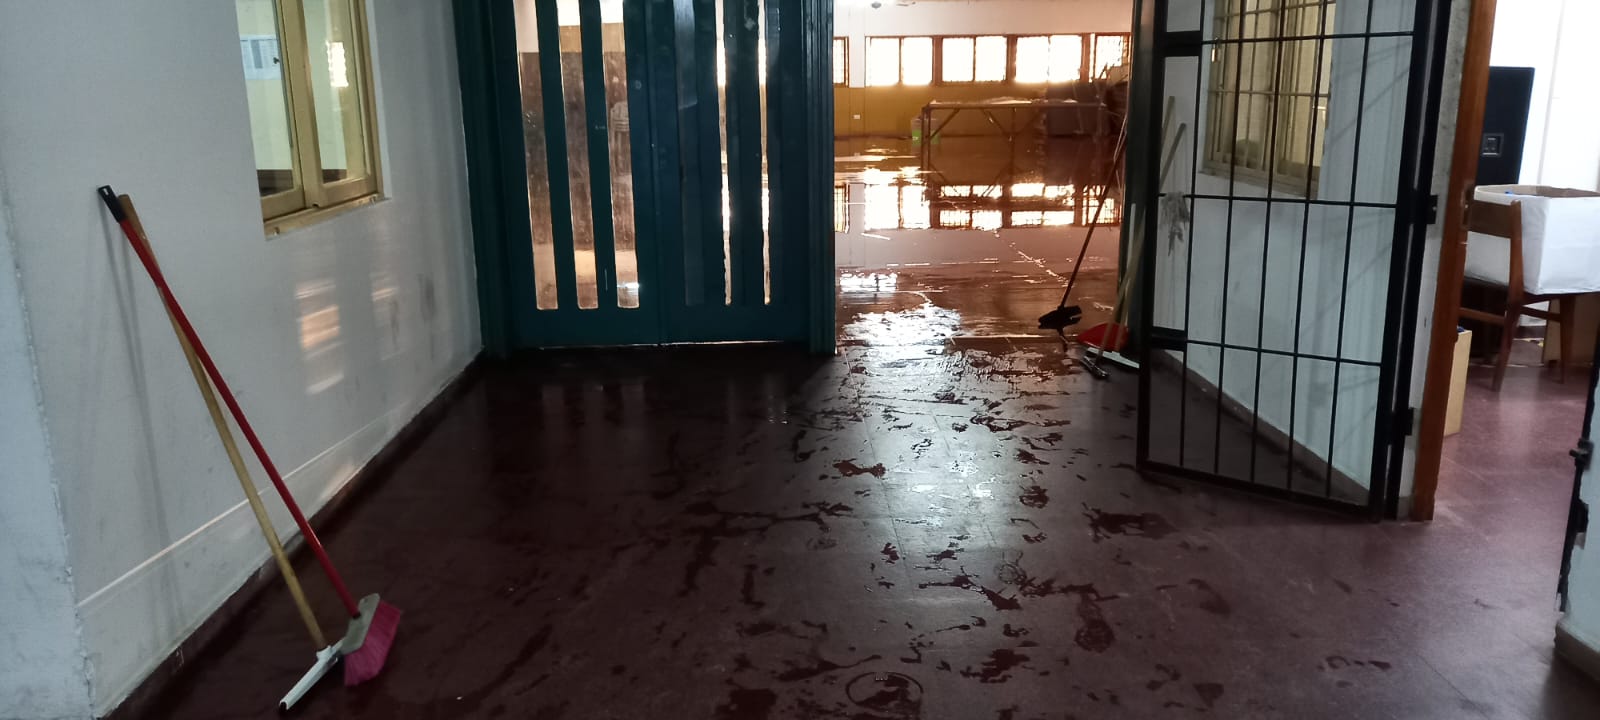 Dramática situación en un colegio de barranqueras que no tiene agua